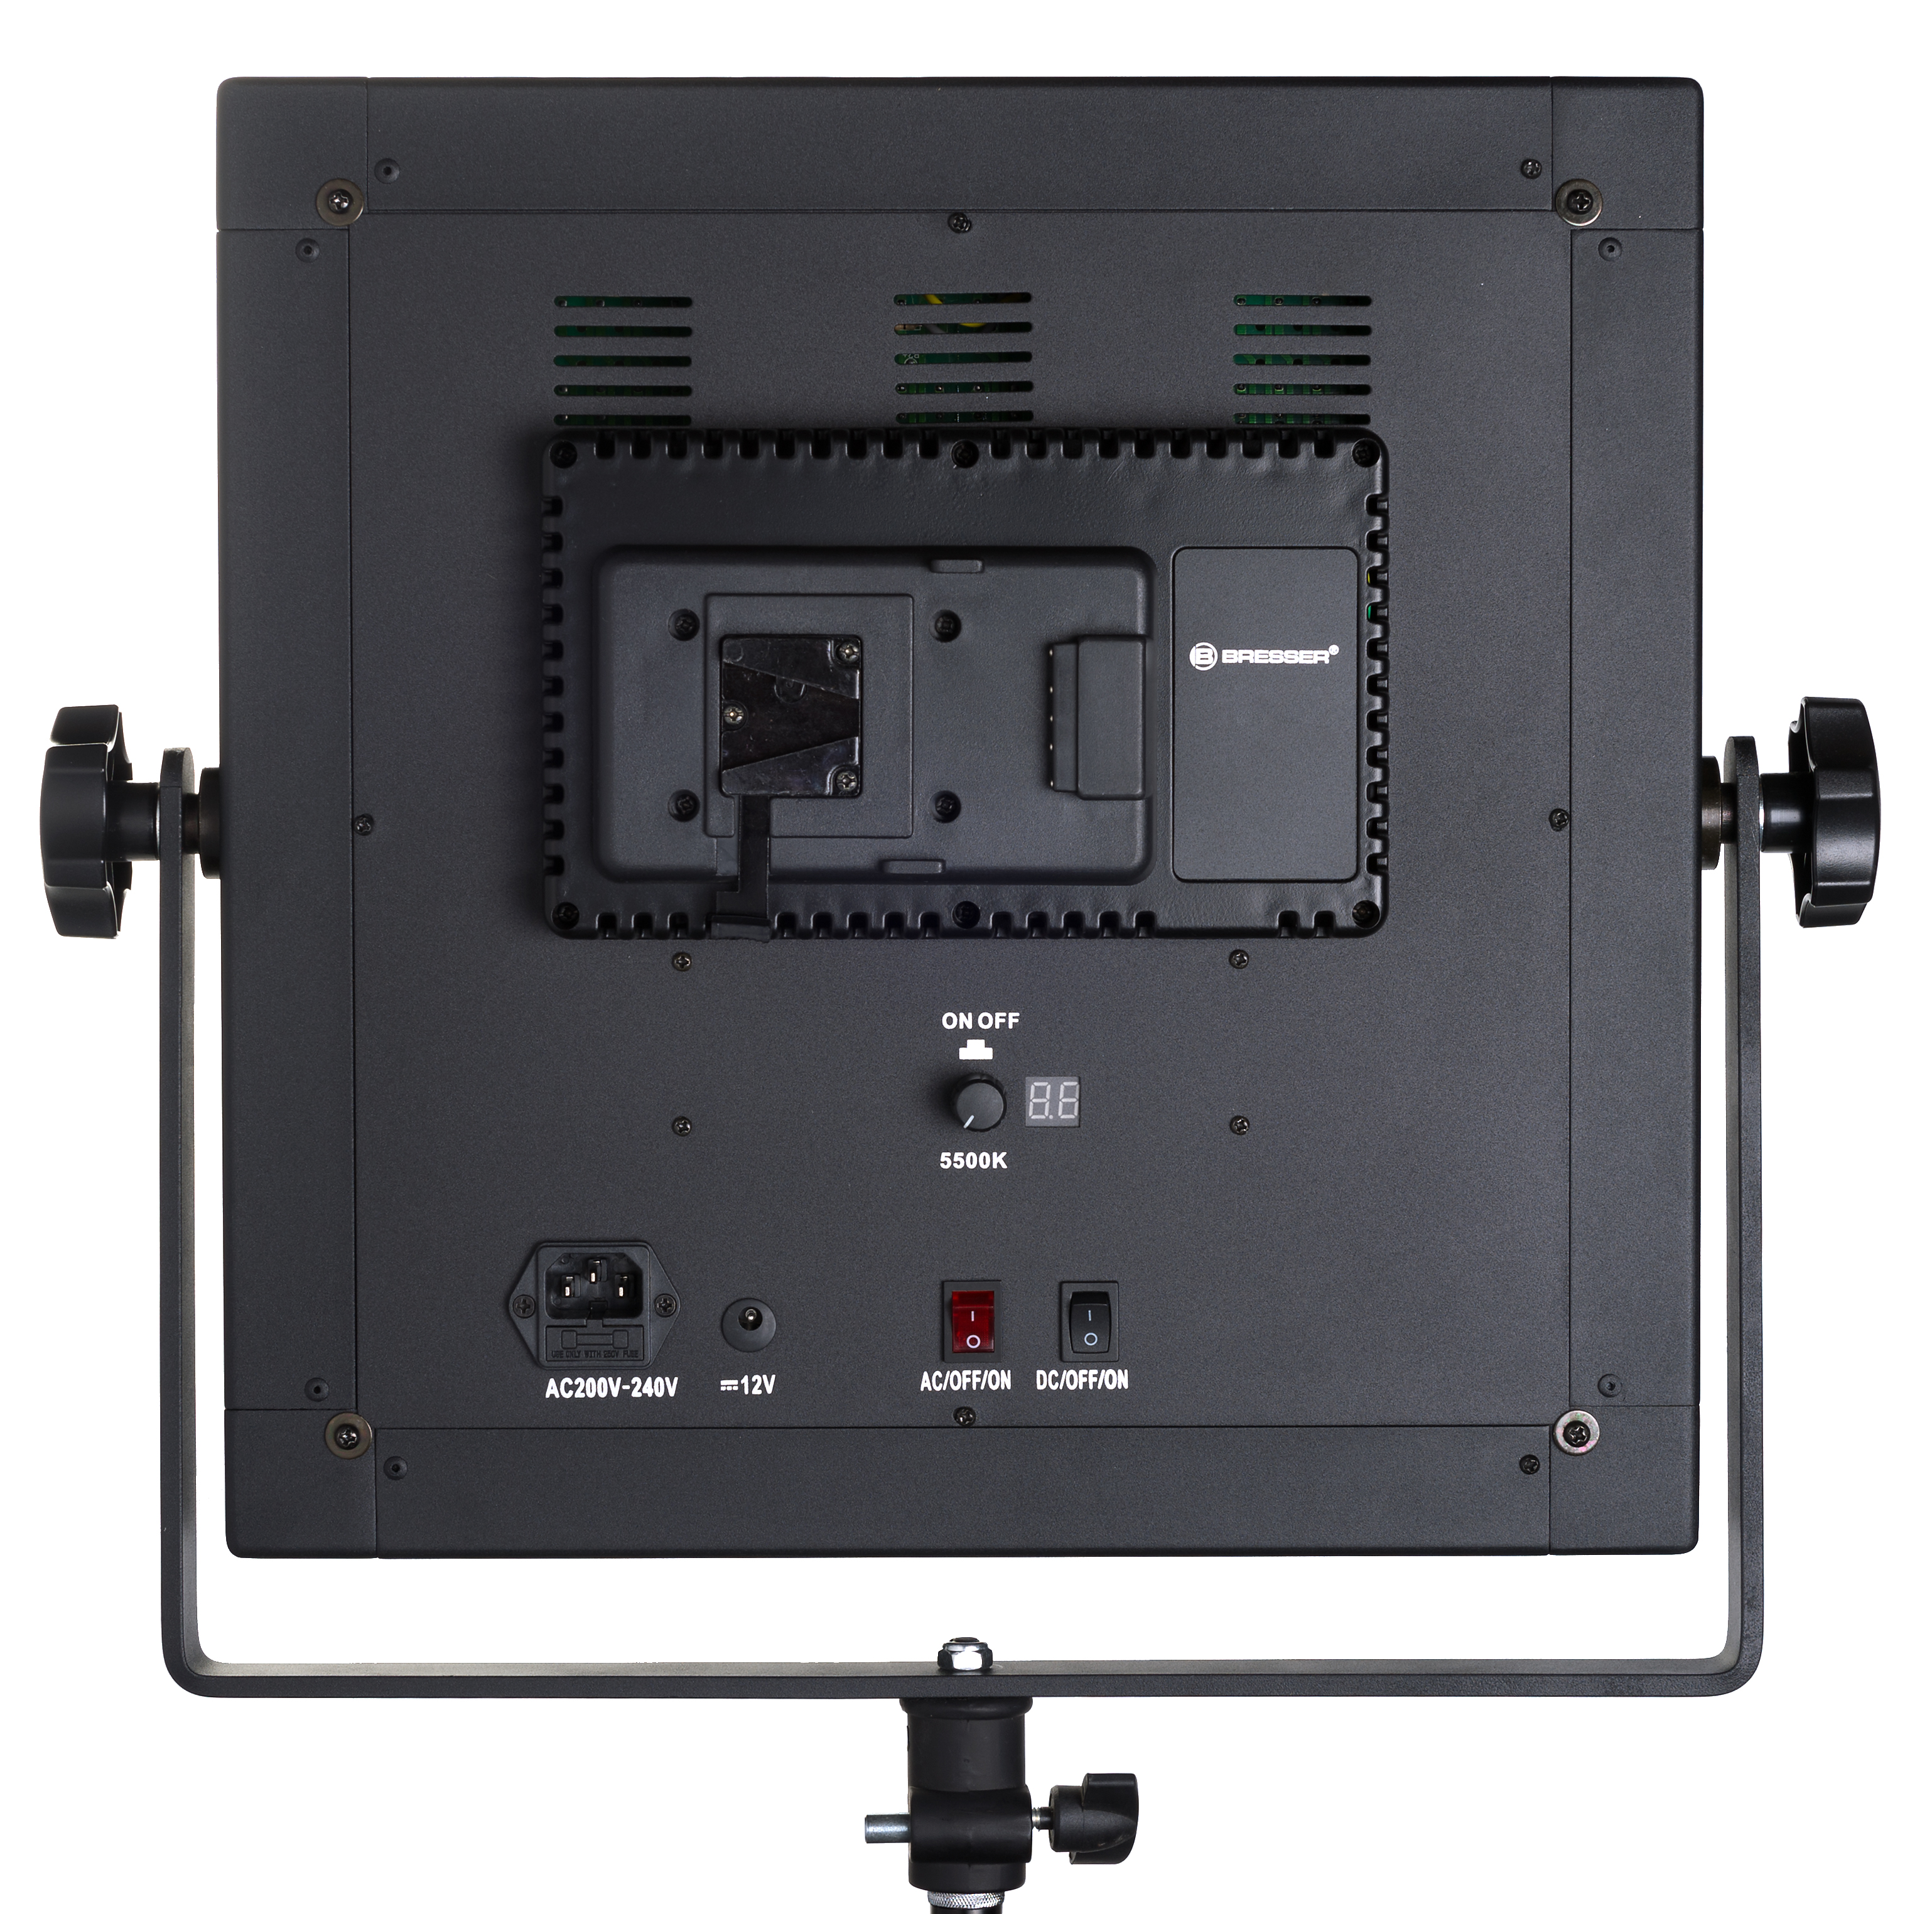 BRESSER LED Foto-Video Set 2x LS-600 38W/5.600LUX + 2x Stativ